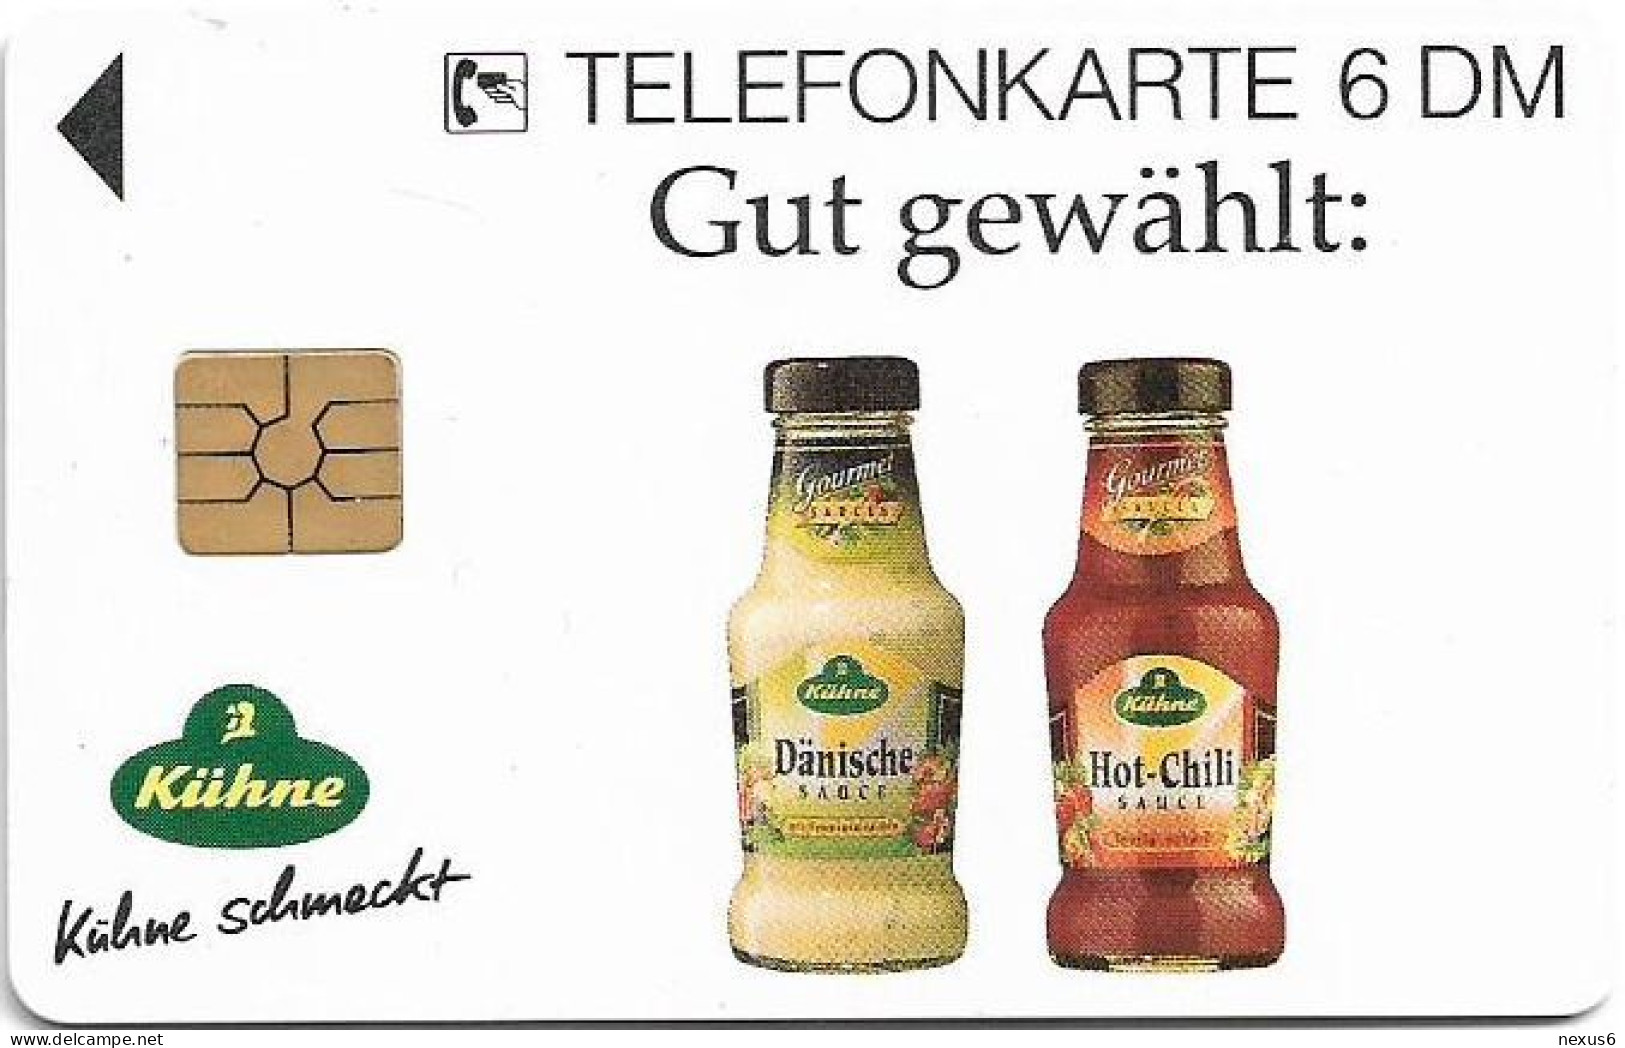 Germany - Kühne 14 - Ich Grill, Wie Ich Will - O 0170 - 02.1995, 6DM, 2.000ex, Used - O-Series: Kundenserie Vom Sammlerservice Ausgeschlossen